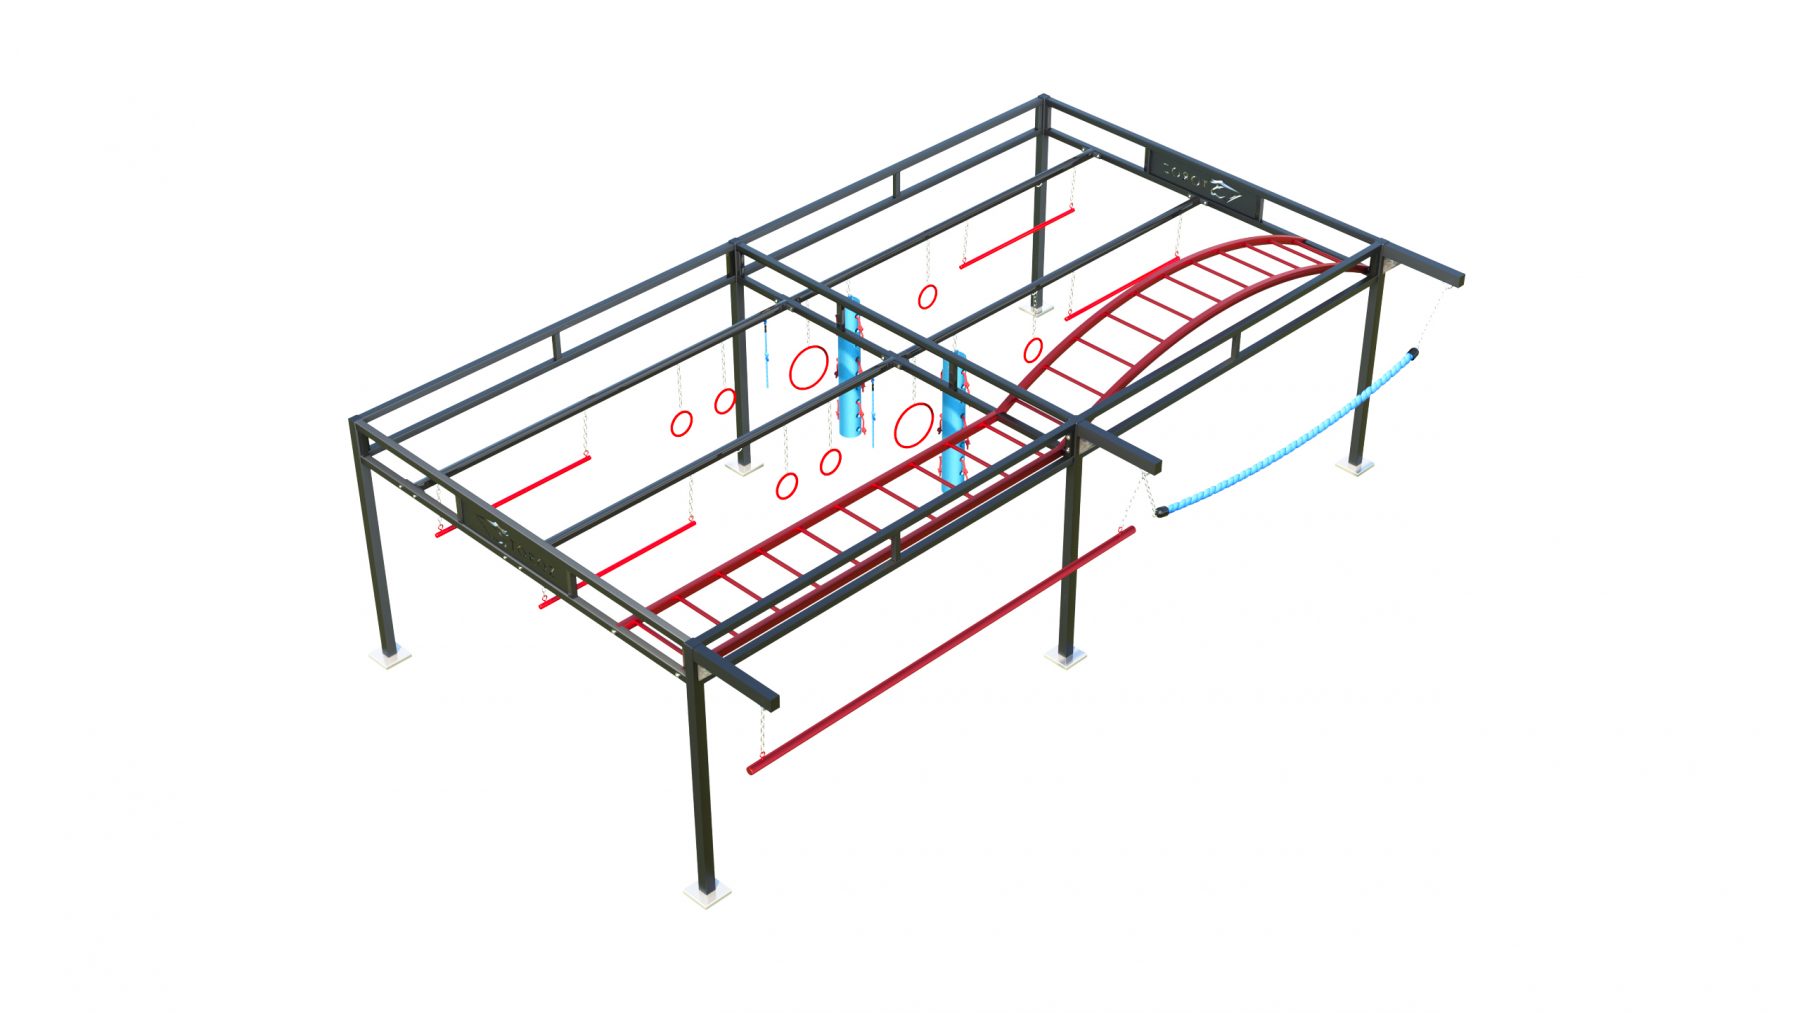 Structure d'entraînement OCR/NINJA Cage 2.3.3 Lézard - Parcours sportifs pour athlètes - Compact et polyvalent!